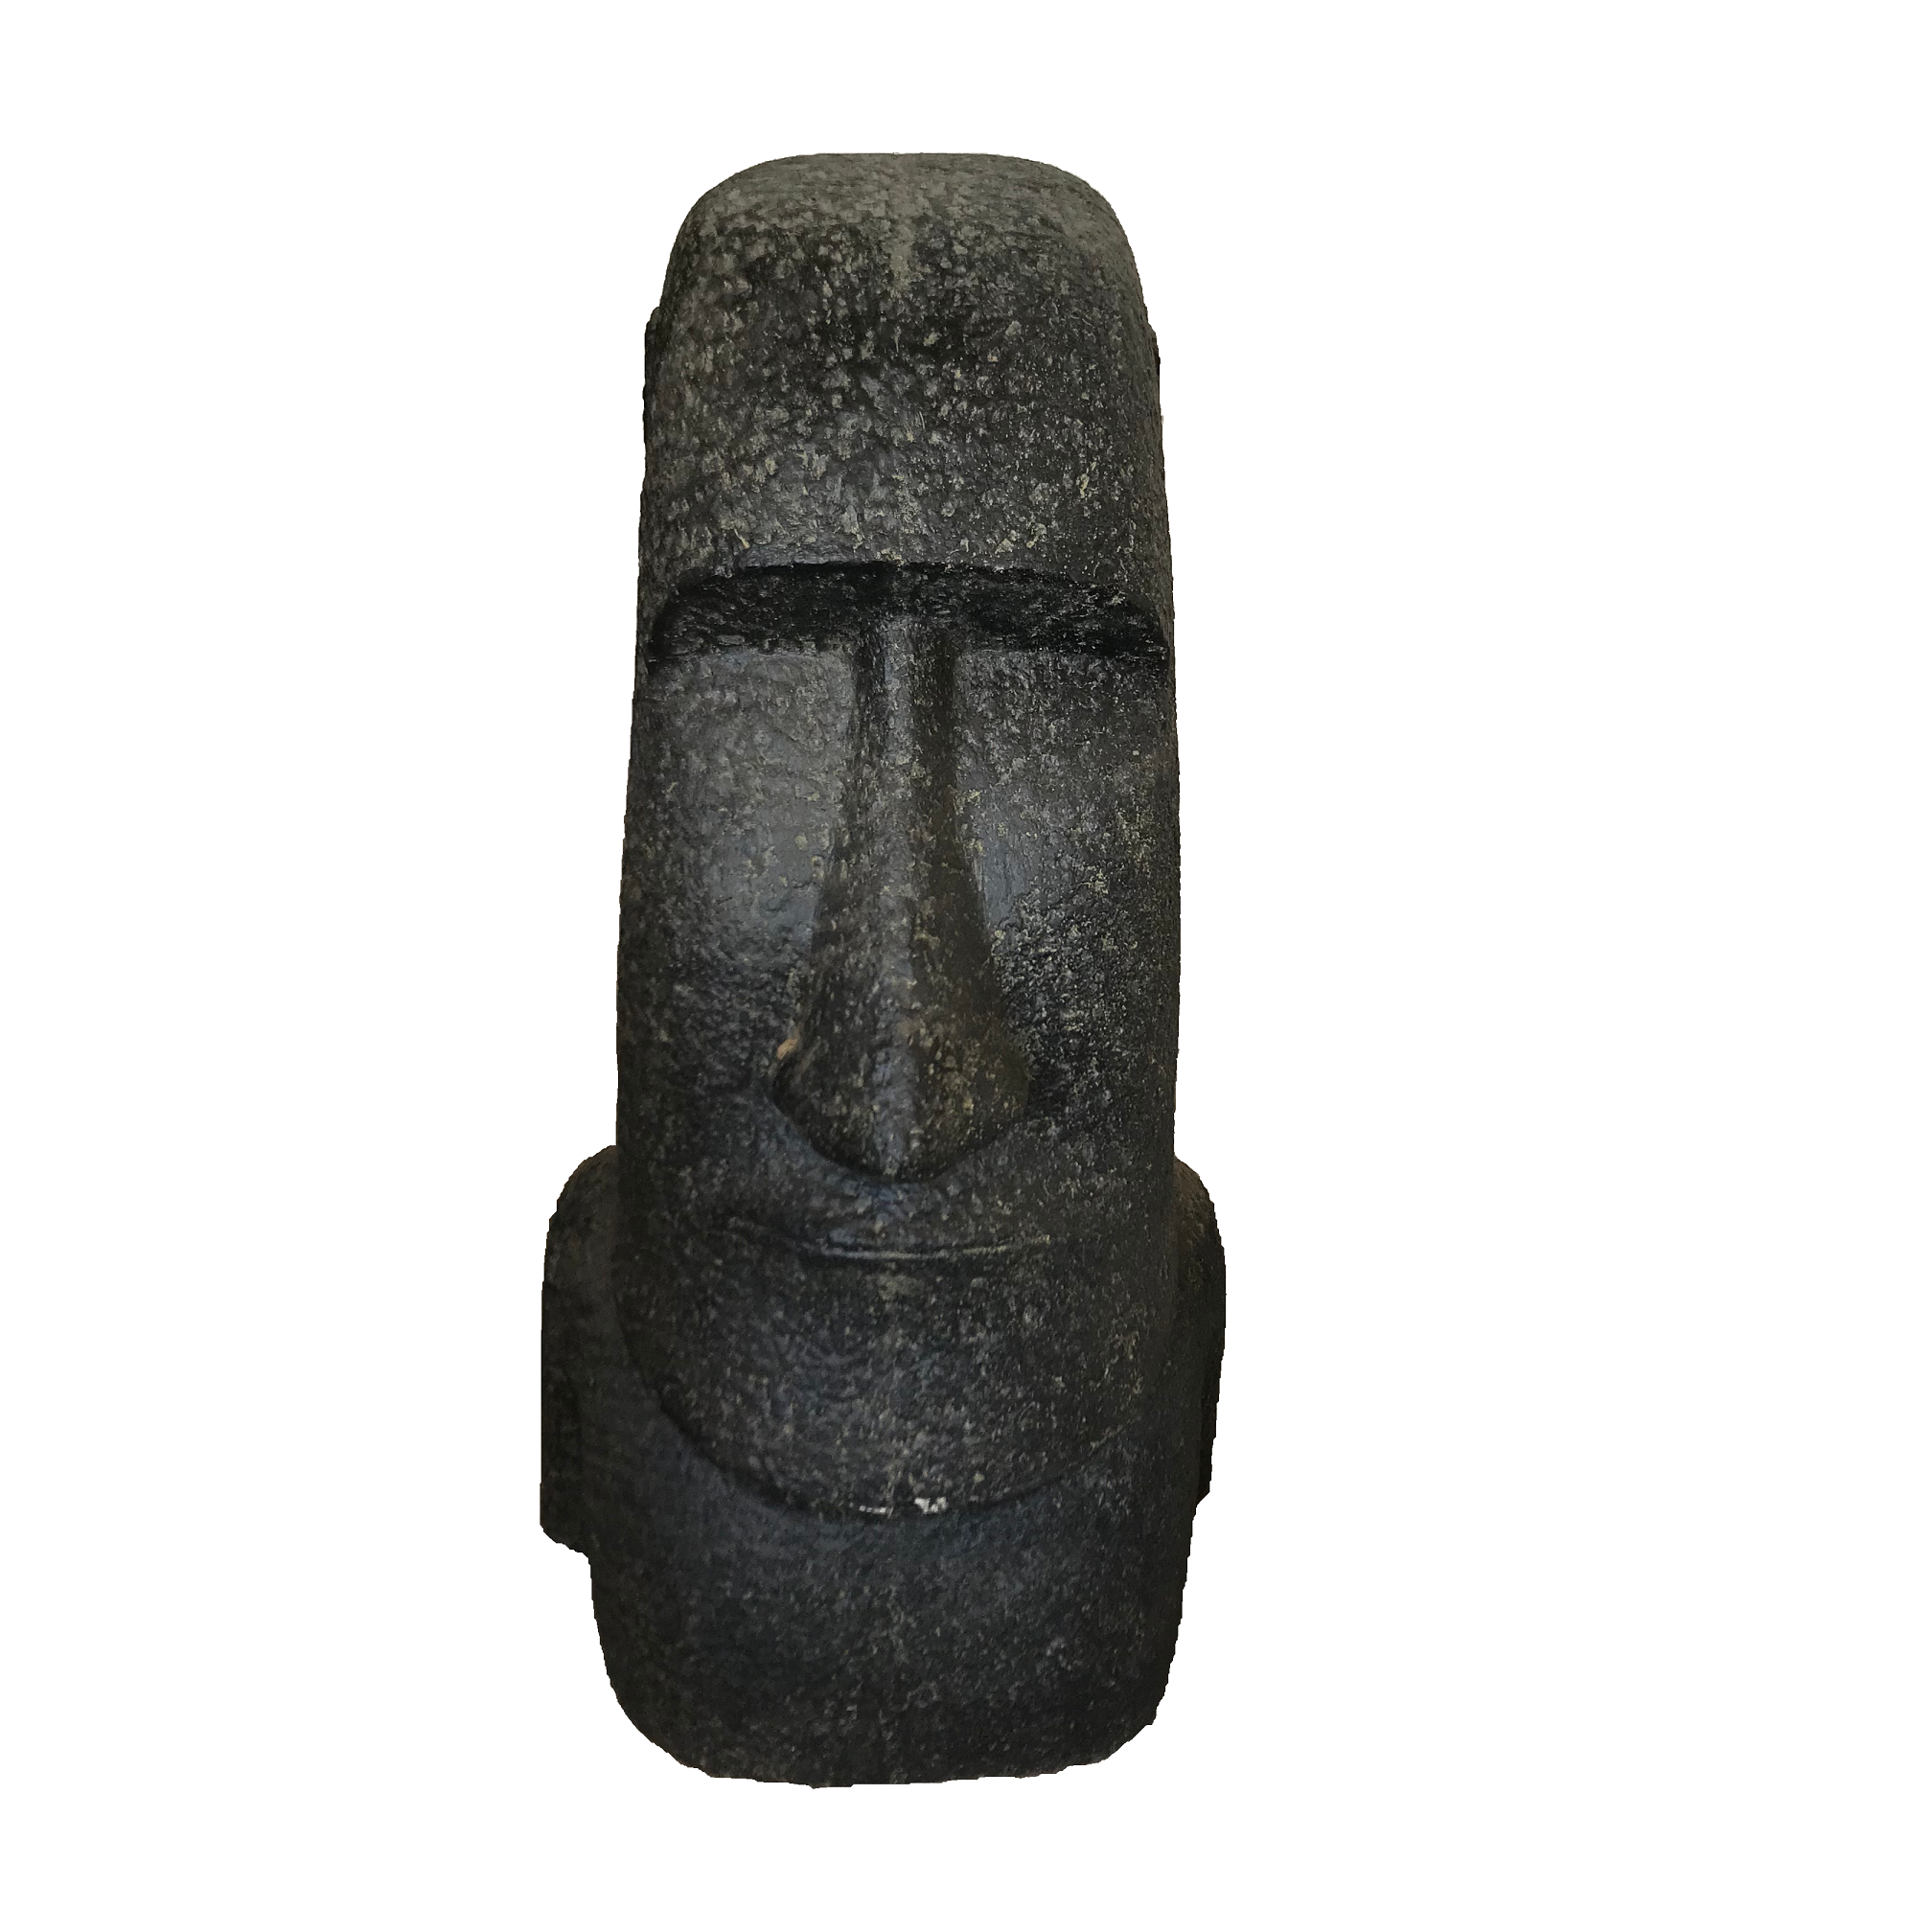 Moai Kopf Osterinsel, Steinguss